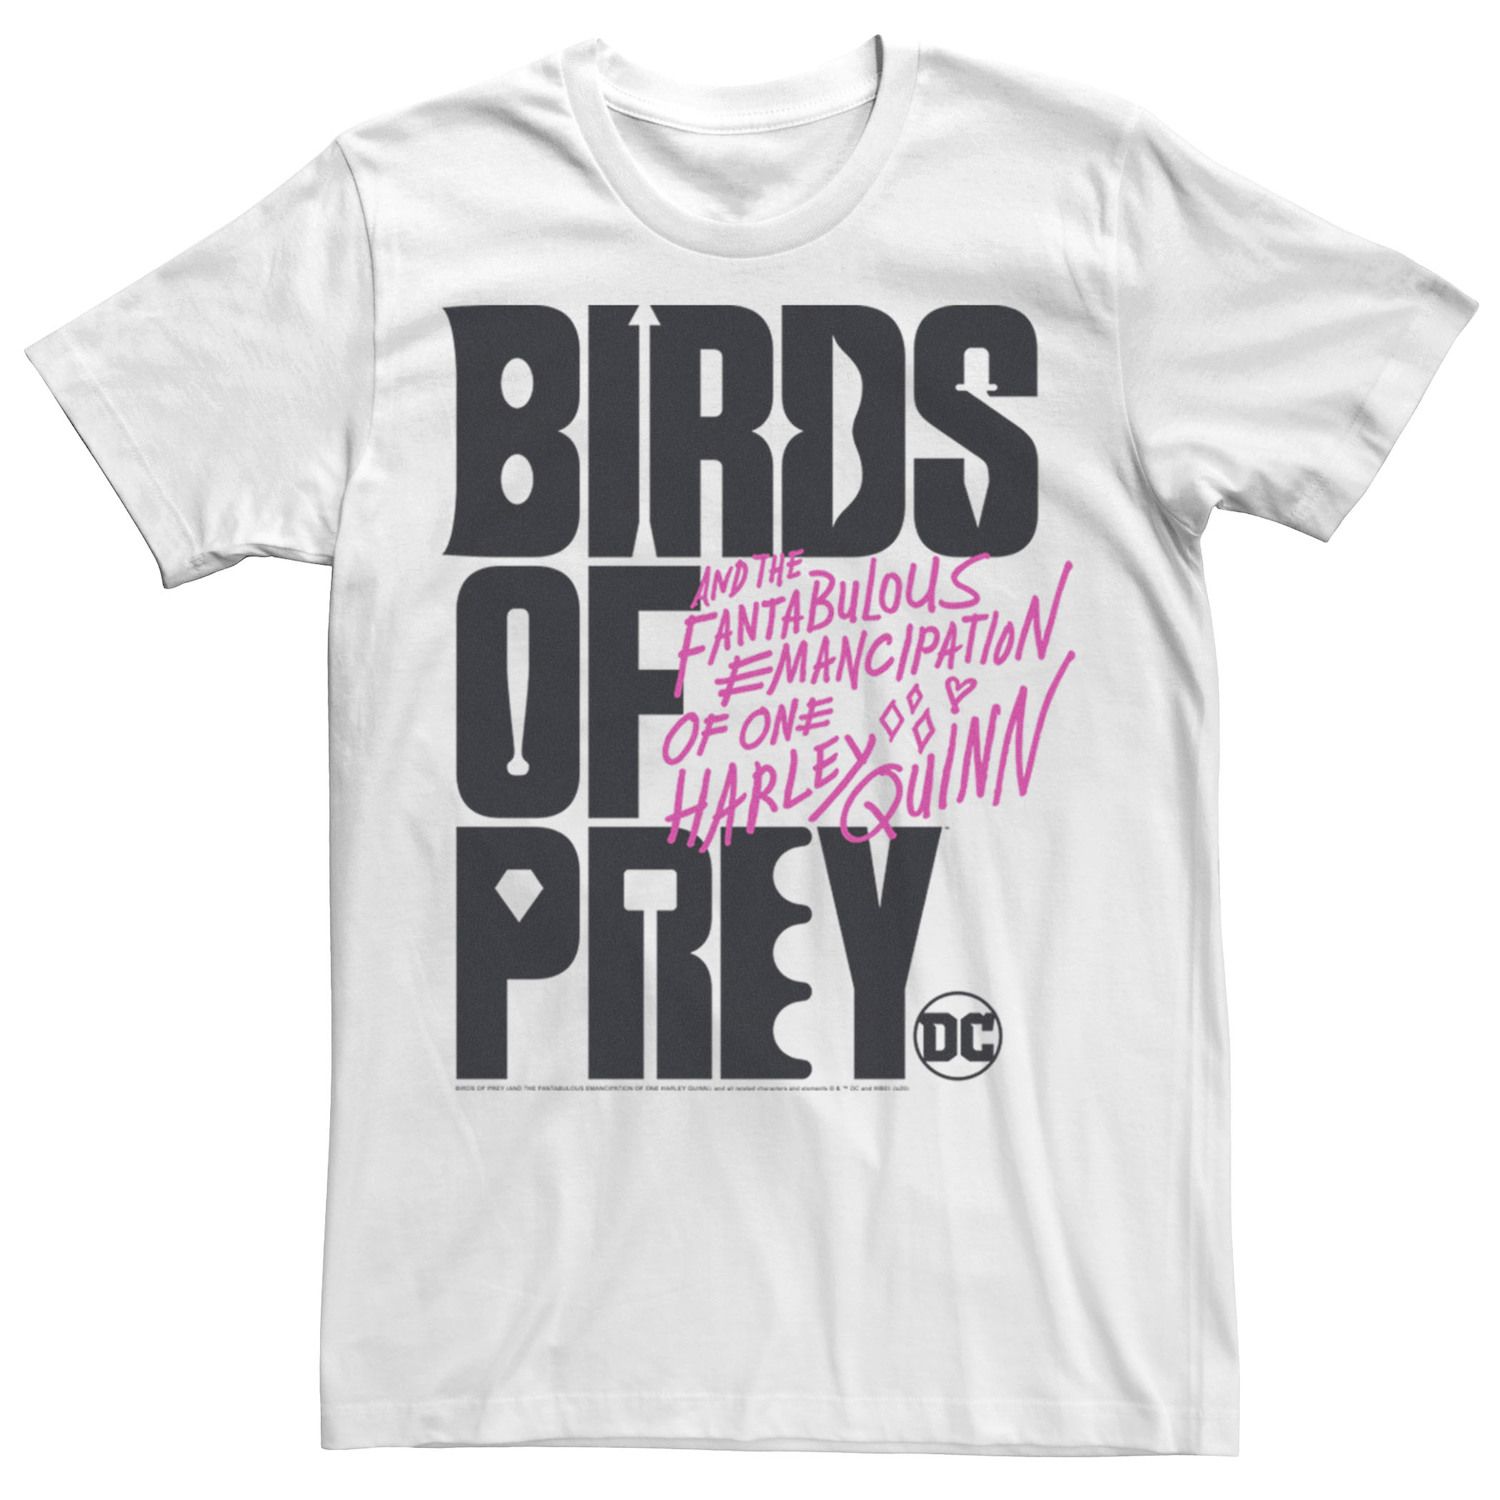 Мужская футболка с текстовым логотипом «Хищные птицы» DC Comics мужская футболка с текстовым логотипом хищные птицы dc comics